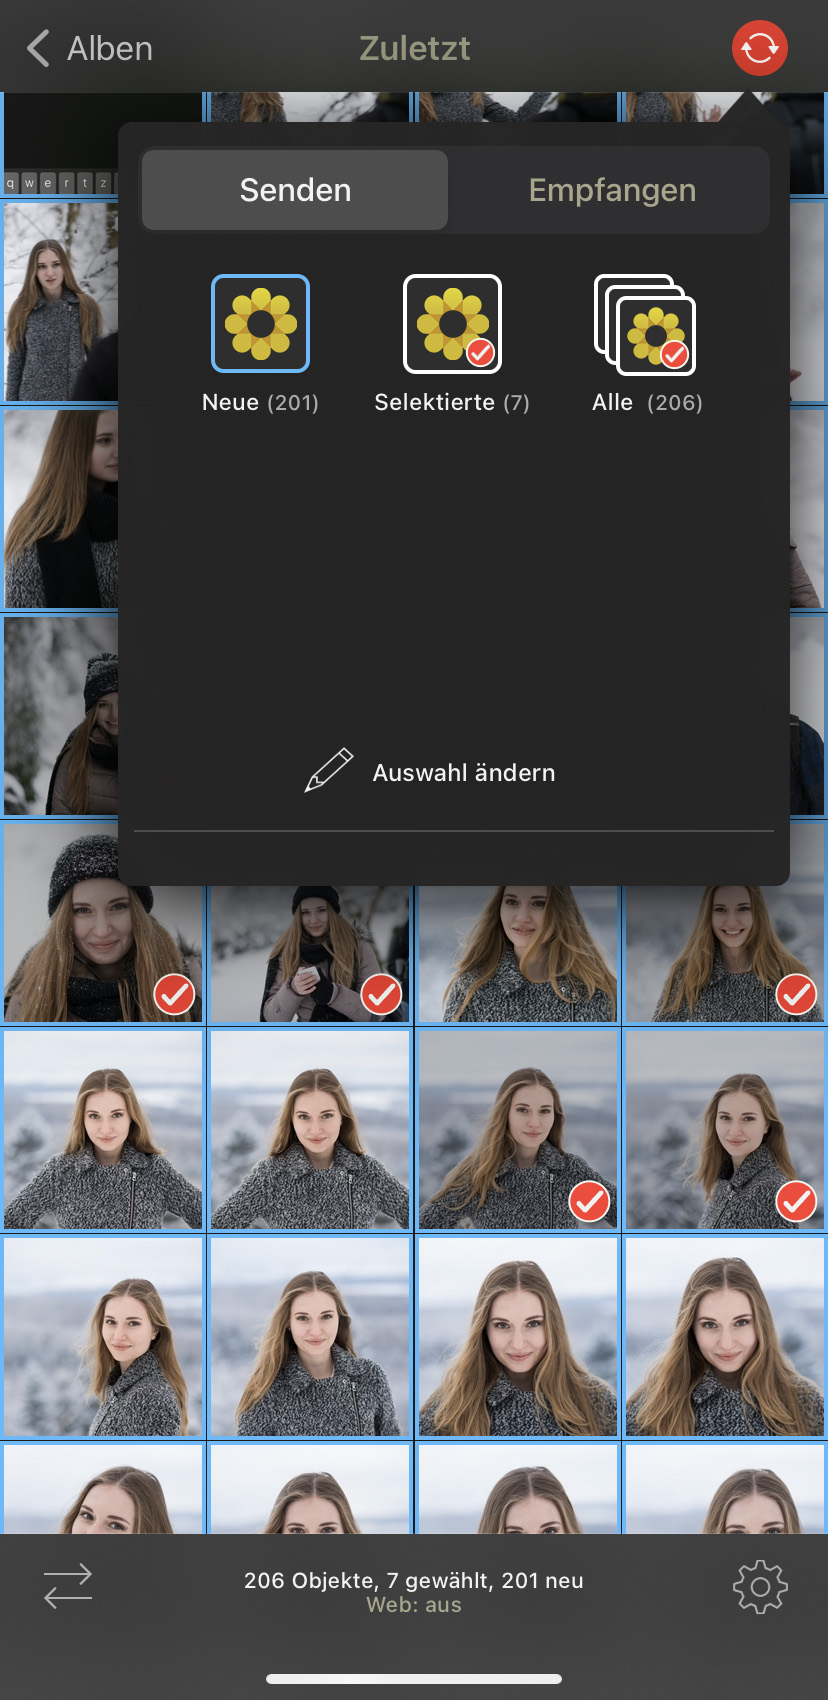 Screenshot aus der iOS-App PhotoSync zum Hochladen von Bildern in den Media Hub per SFTP-Verbindung